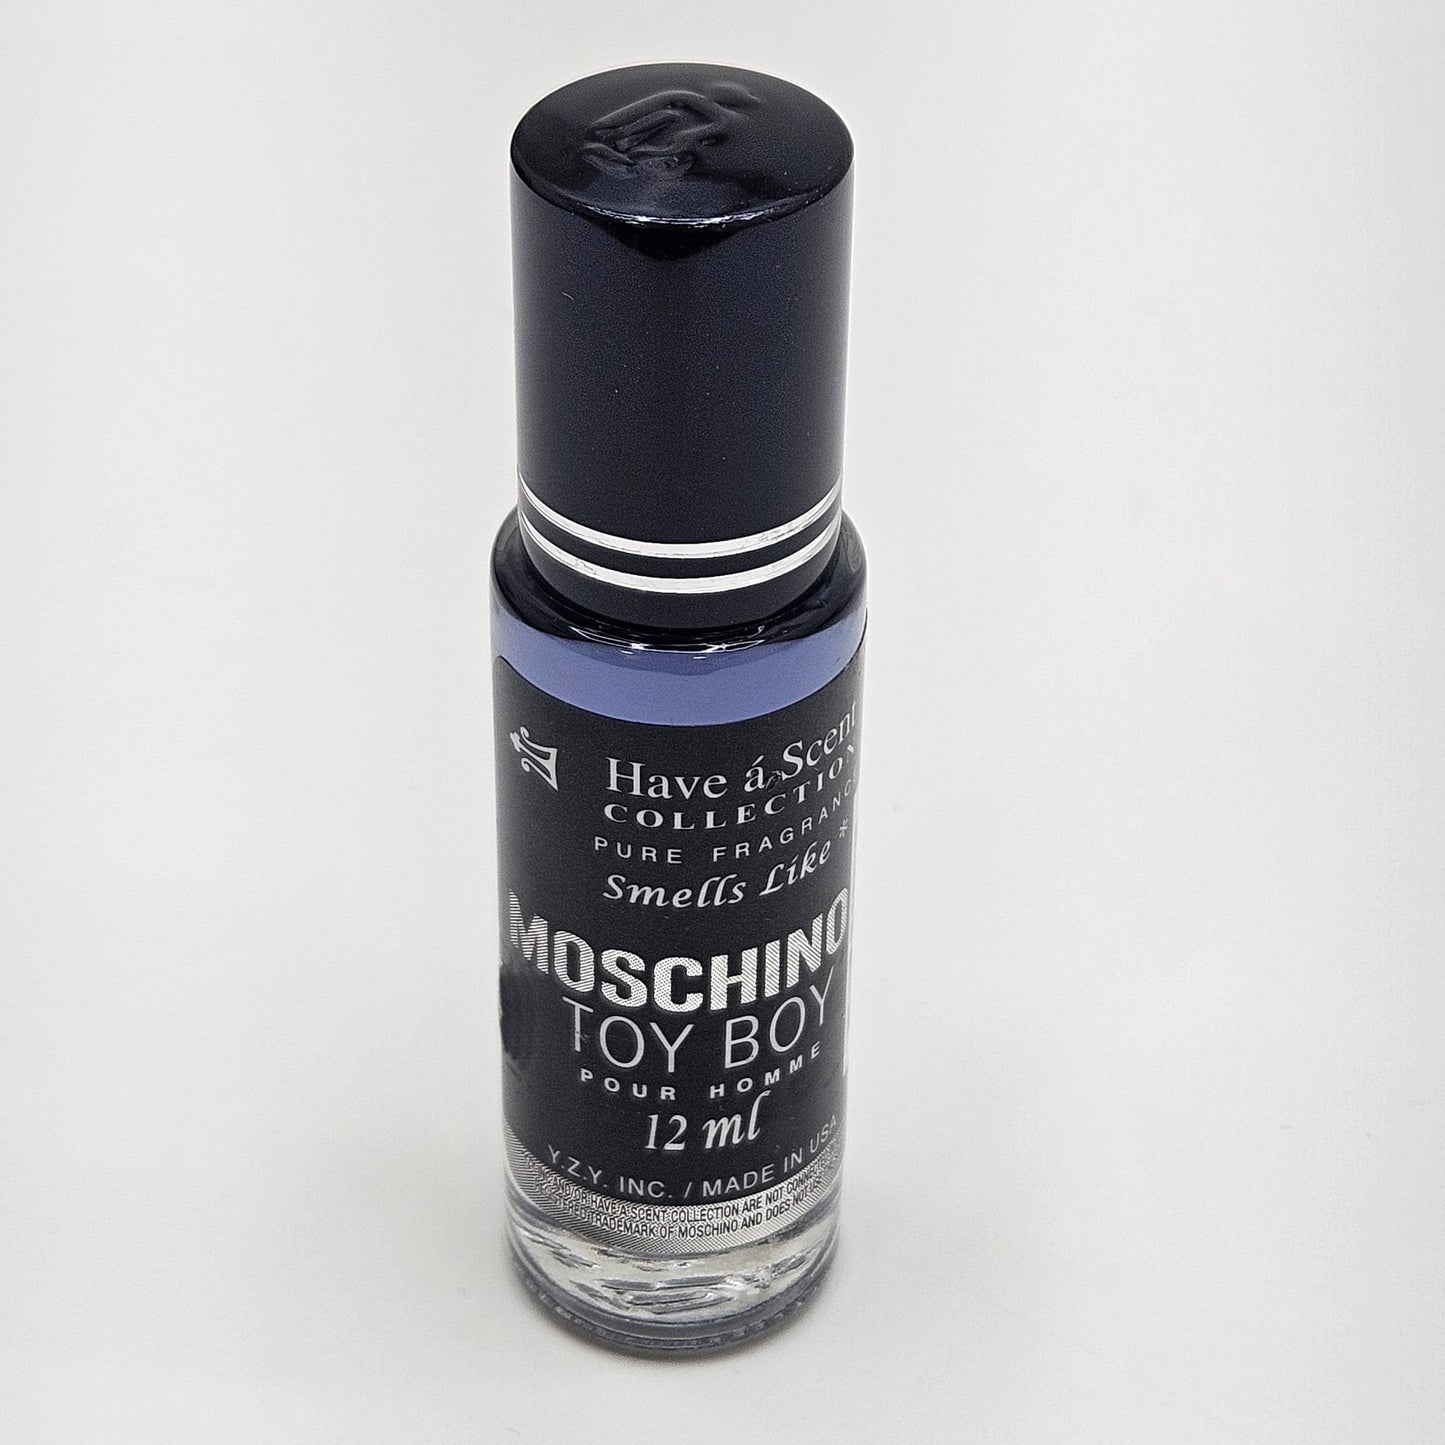 Perfume en Aceite 212 De Moschino Toy Boy 12 ml